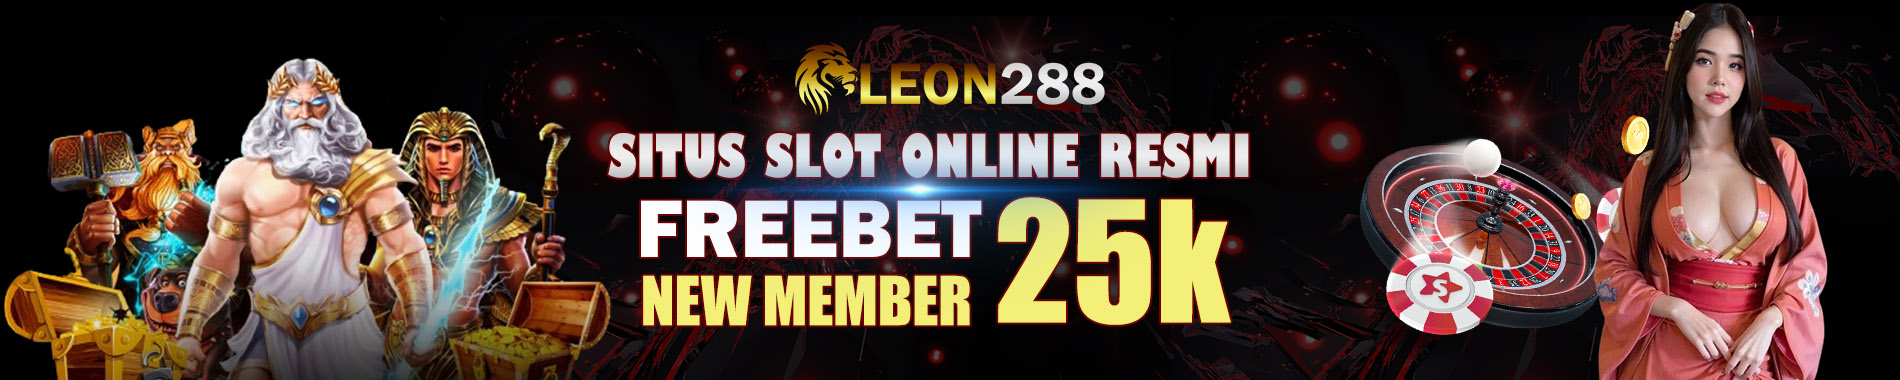 LEON288 Situs Slot Online Resmi